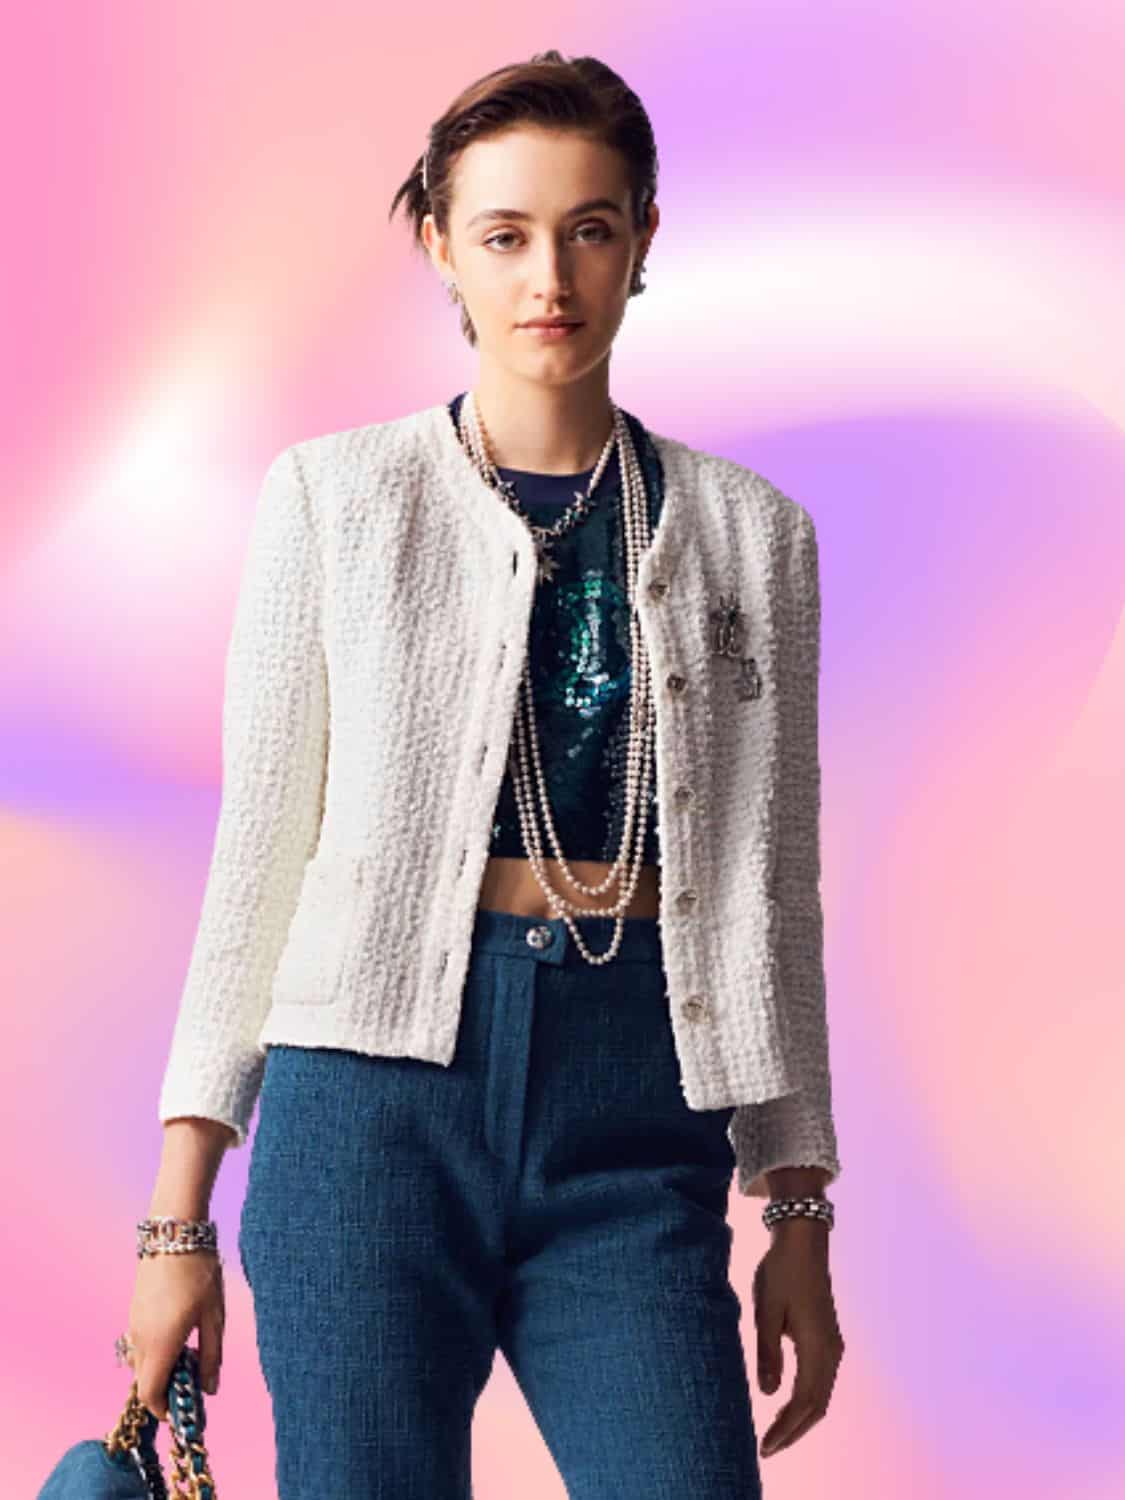 Tweed Still Rules at Chanel - V Magazine